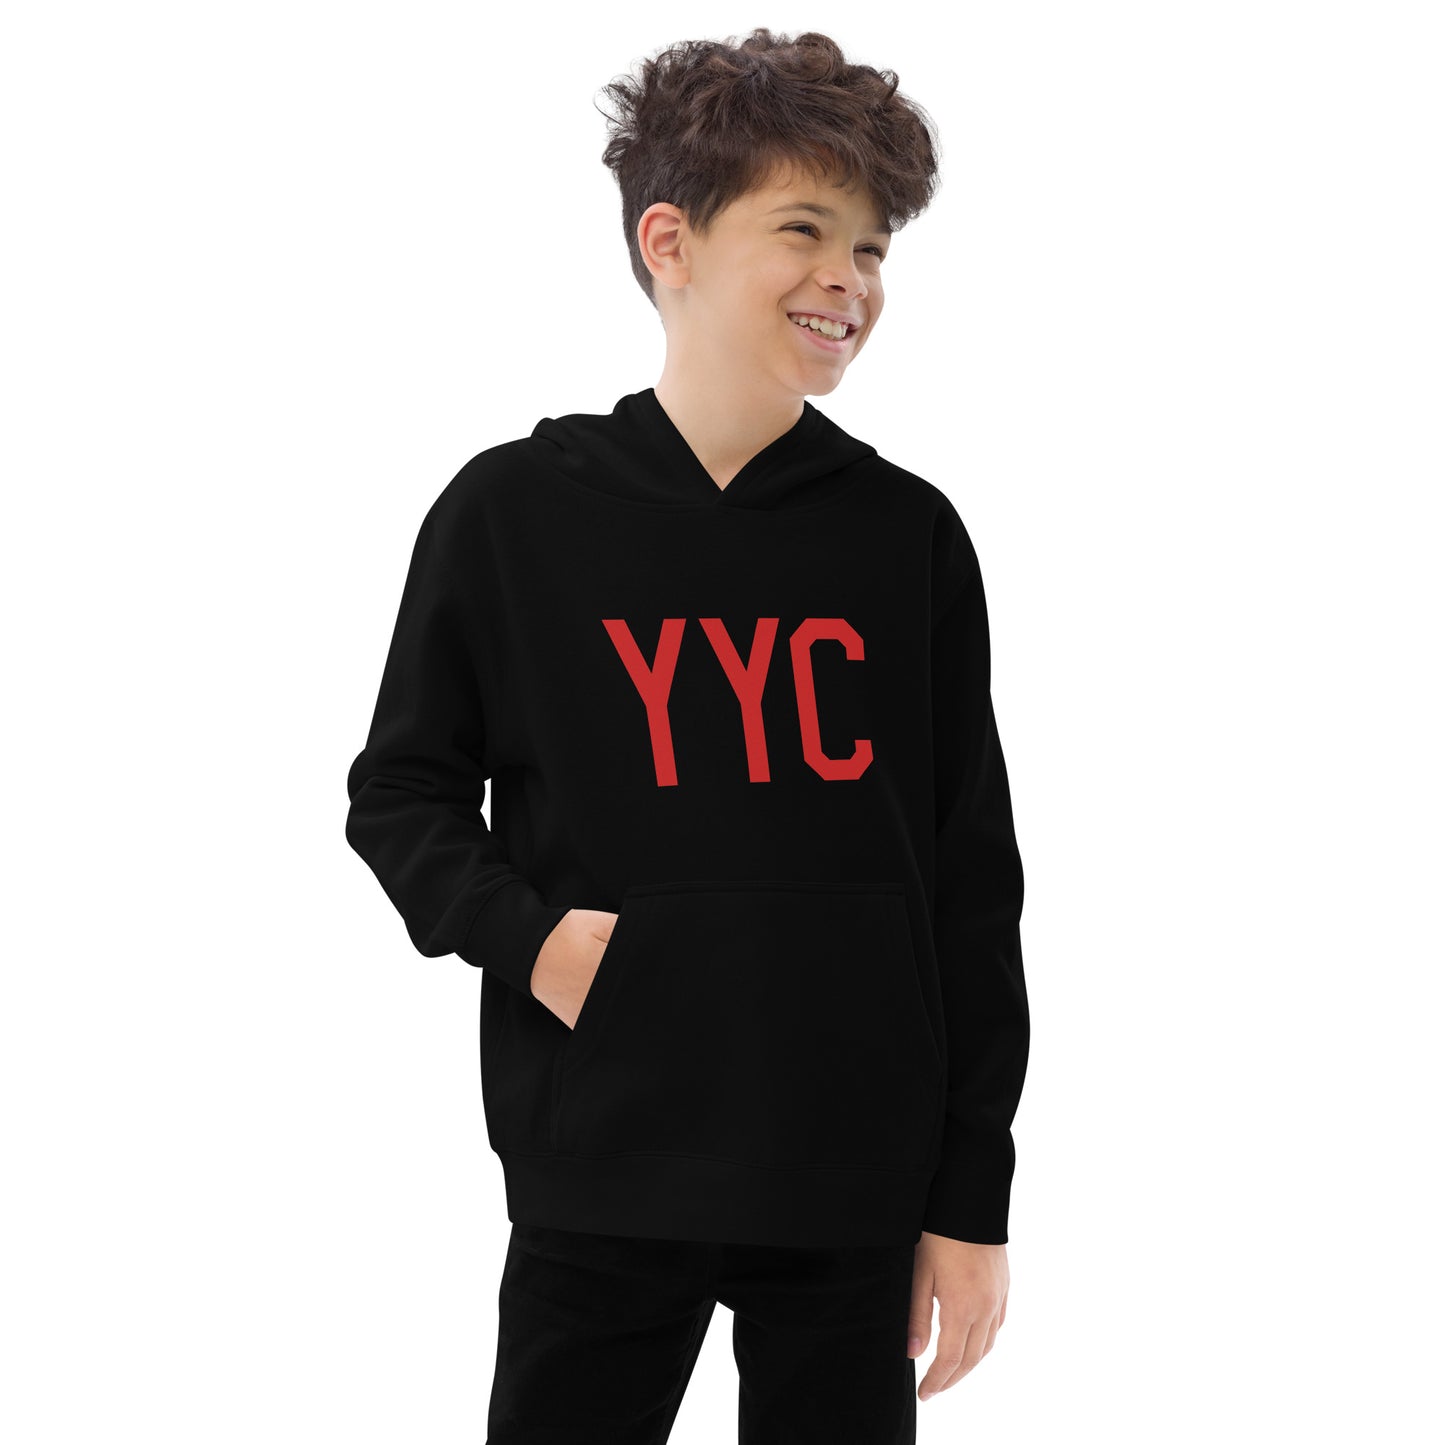 YYC Calgary Alberta Kid's Fleece Hoodie